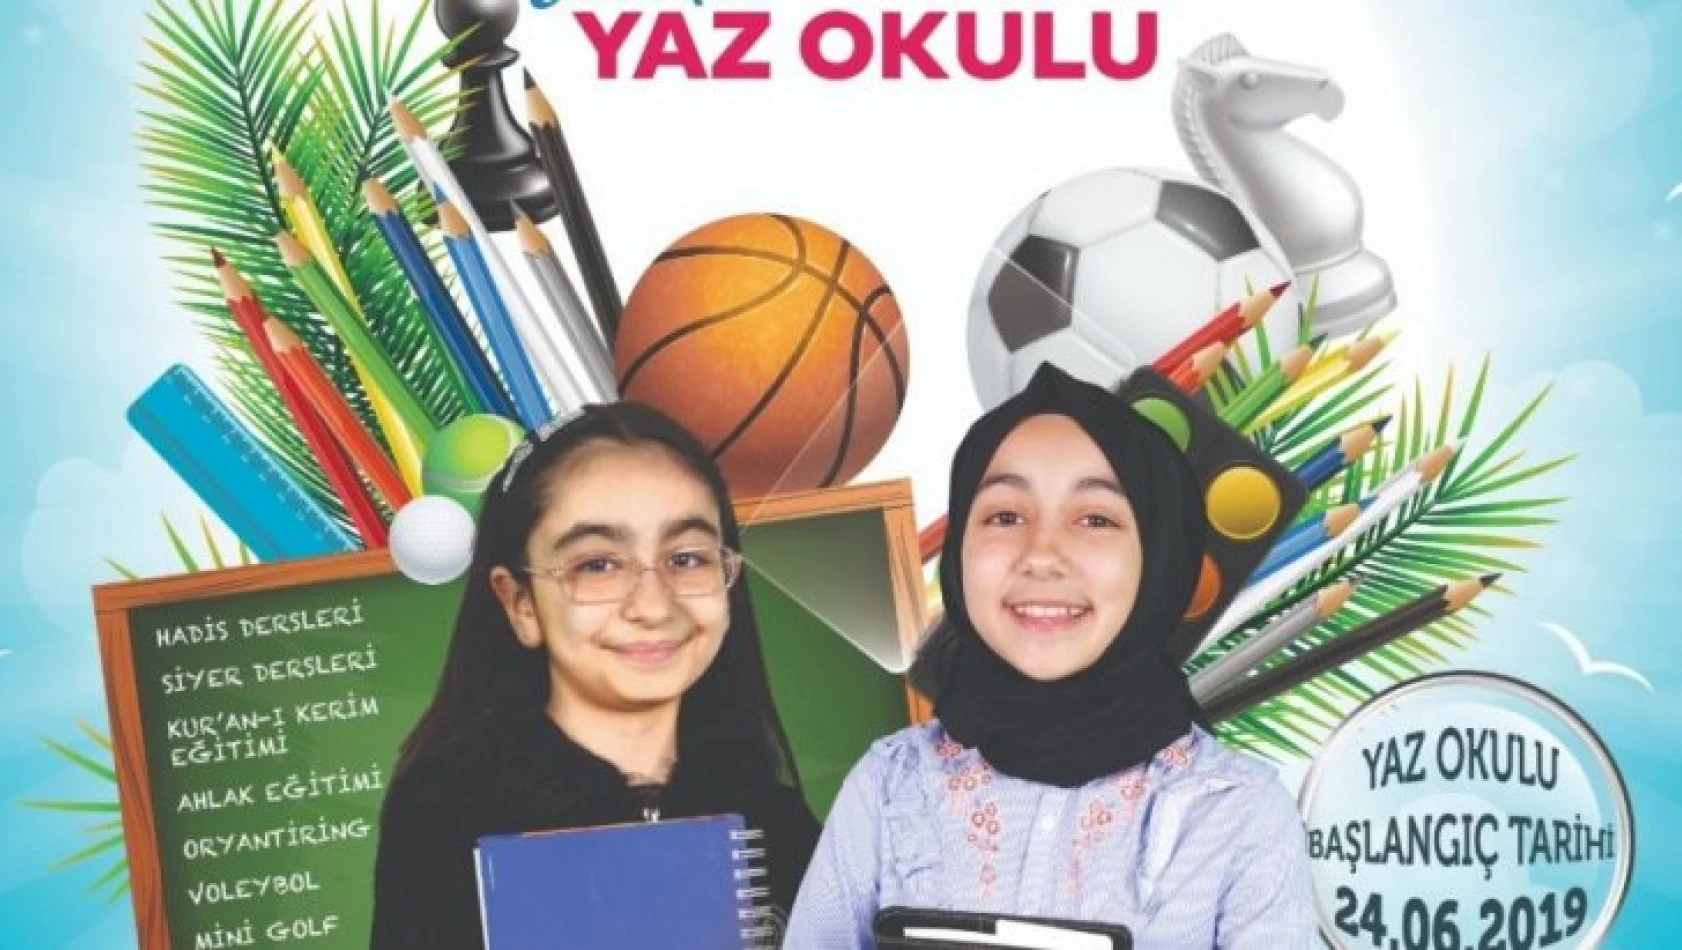 TÜGVA Elazığ'da Yaz Okulu Açıyor